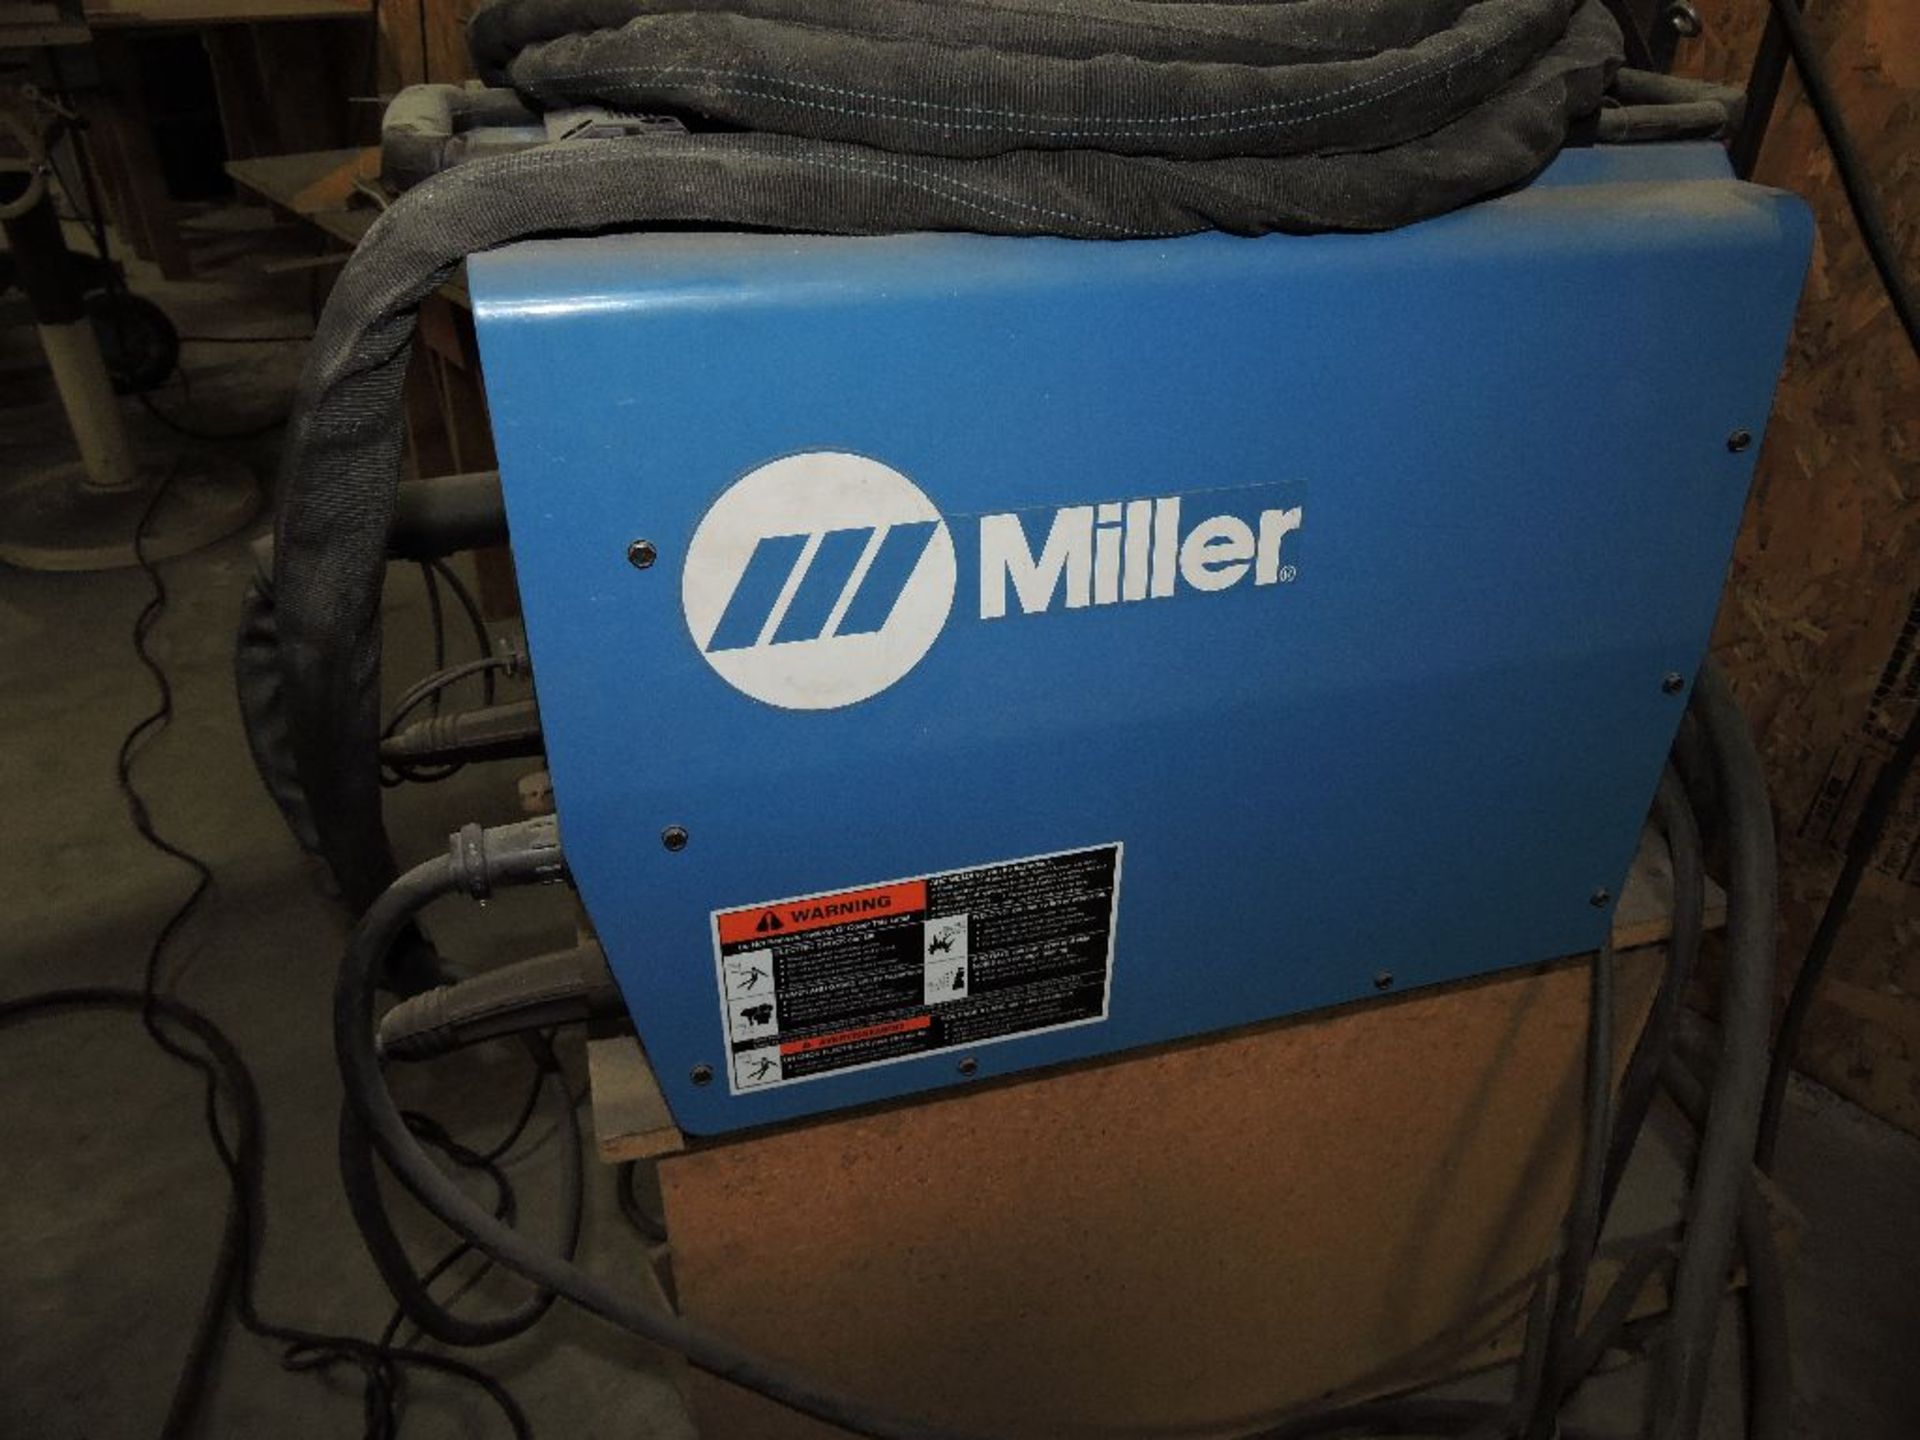 Miller INVISION arc welder, sn KK254273, 354 amp. - Image 2 of 2